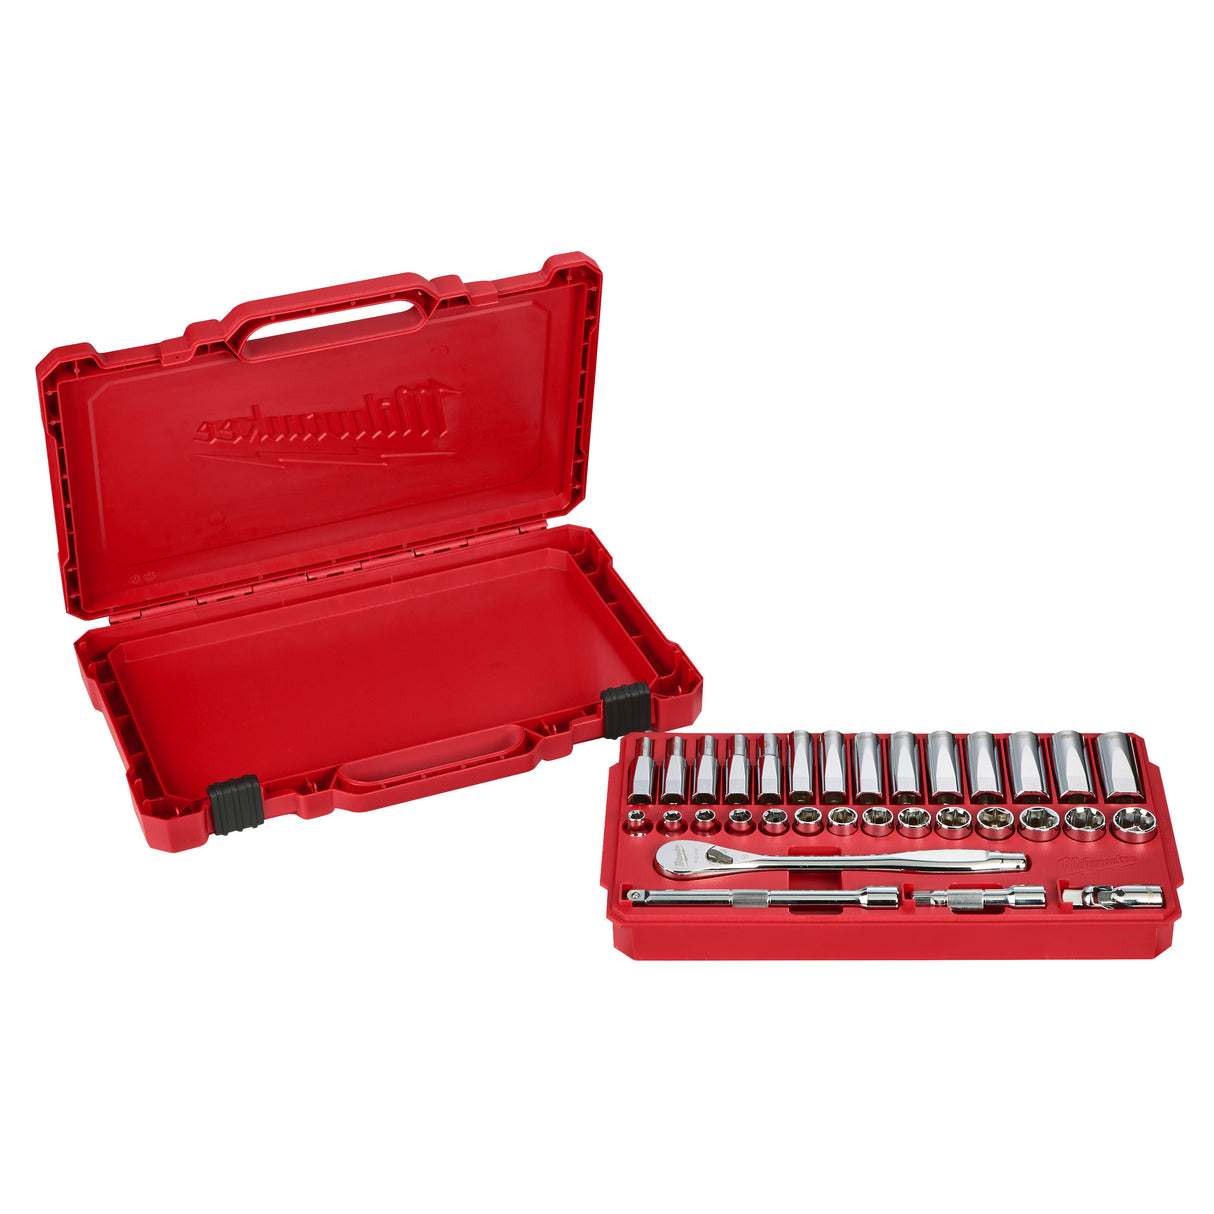 Milwaukee Ratschen- und Steckschlüsseleinsatz-Set 4932464945 roteswerkzeug